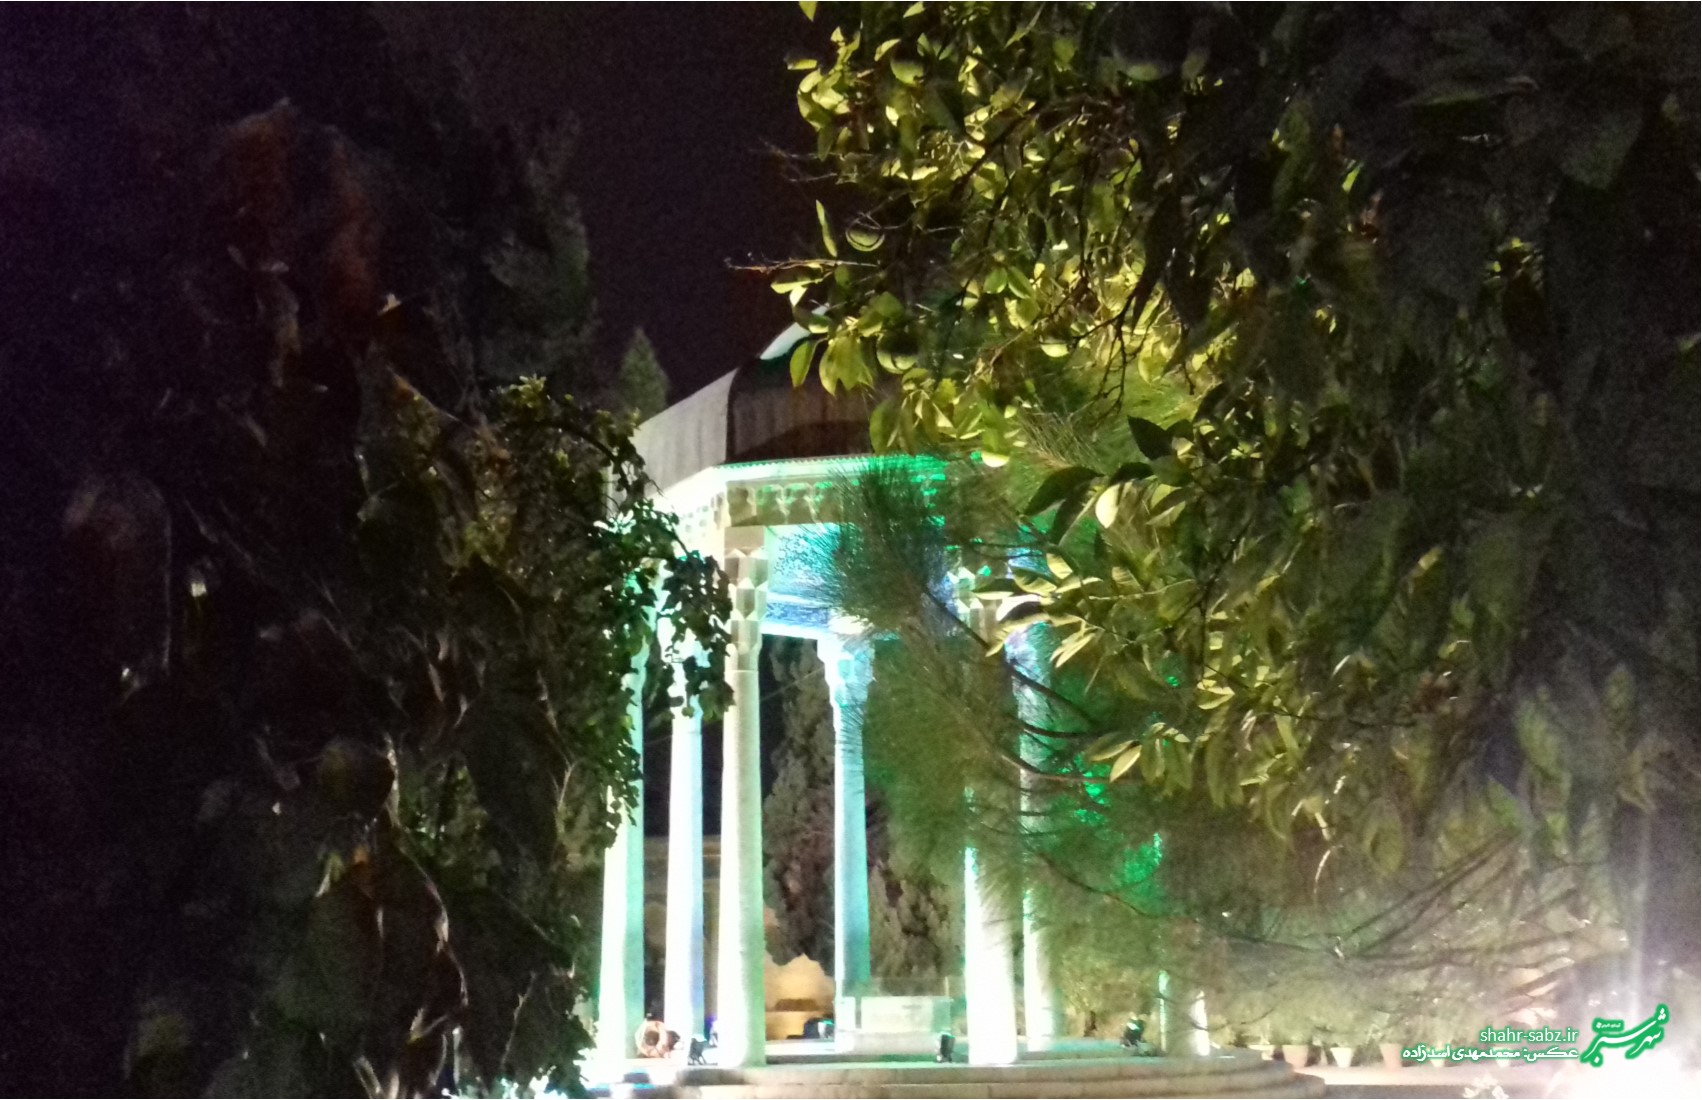 آیین بزرگداشت یادروز حافظ در حافظیه شیراز - عکس از محمدمهدی اسدزاده